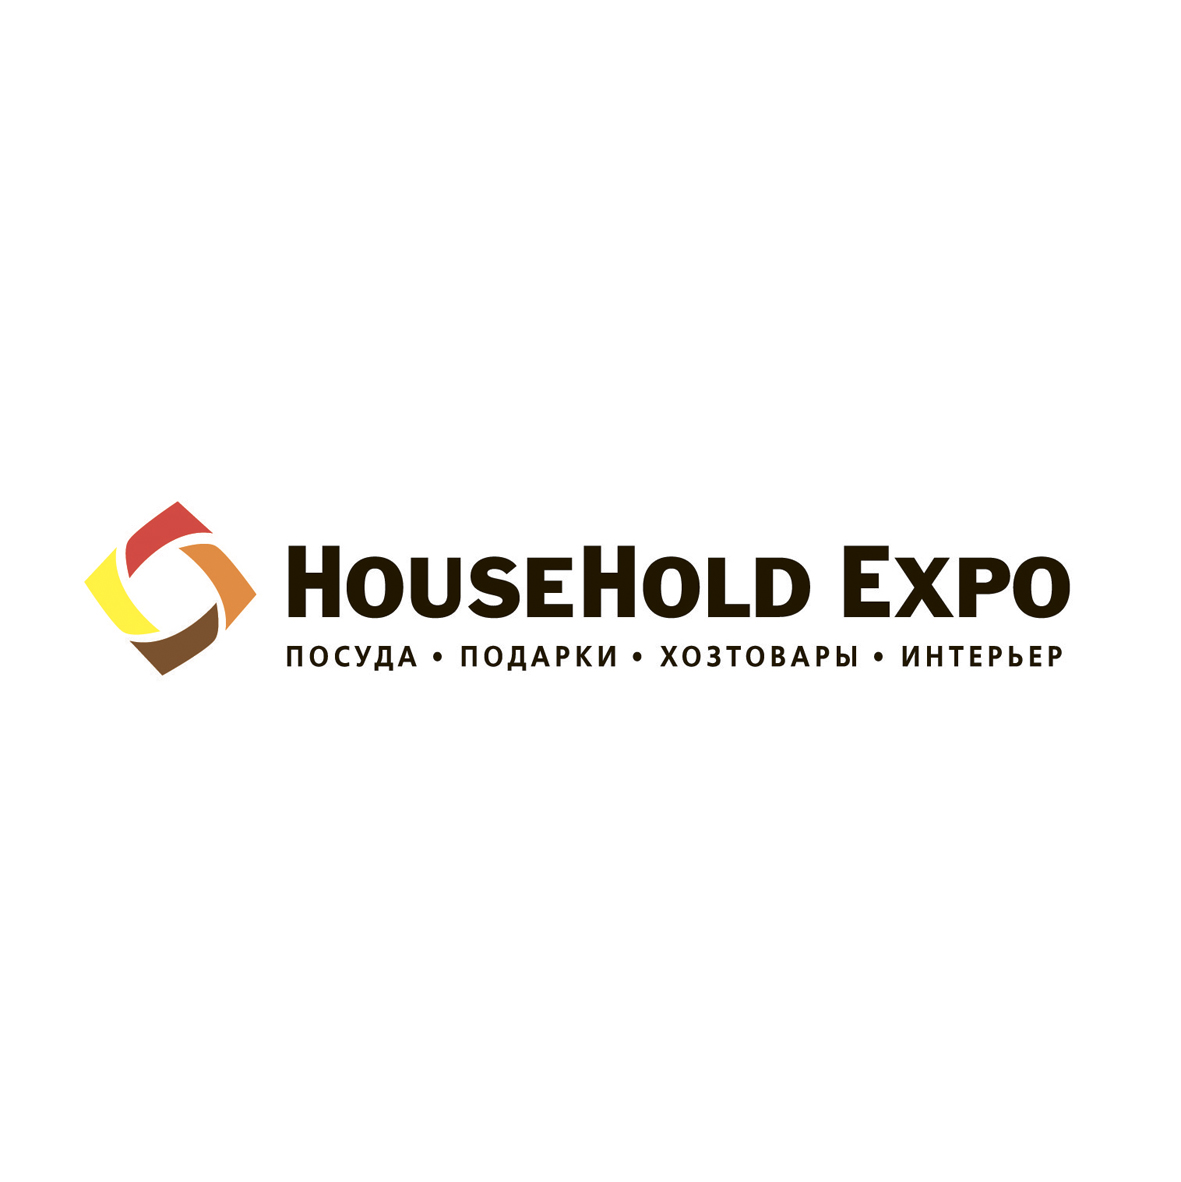 HouseHold Expo 27-29 марта 2018